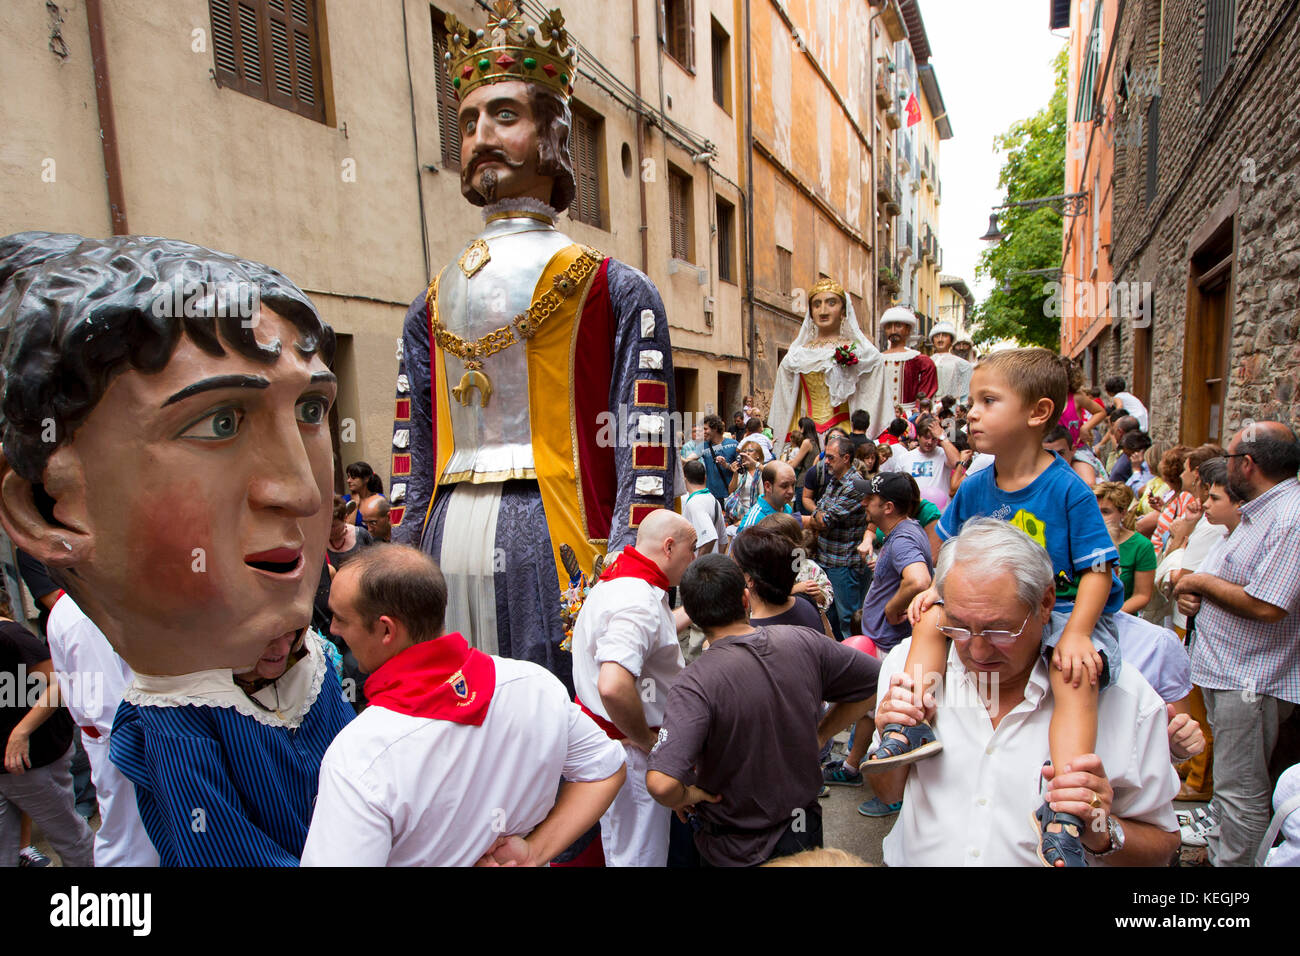 Kostümierte riesige Figuren, gigantes de irunako erraldoiak, in San Fermin Fiesta in Pamplona, Navarra, nördlichen Spanien Stockfoto